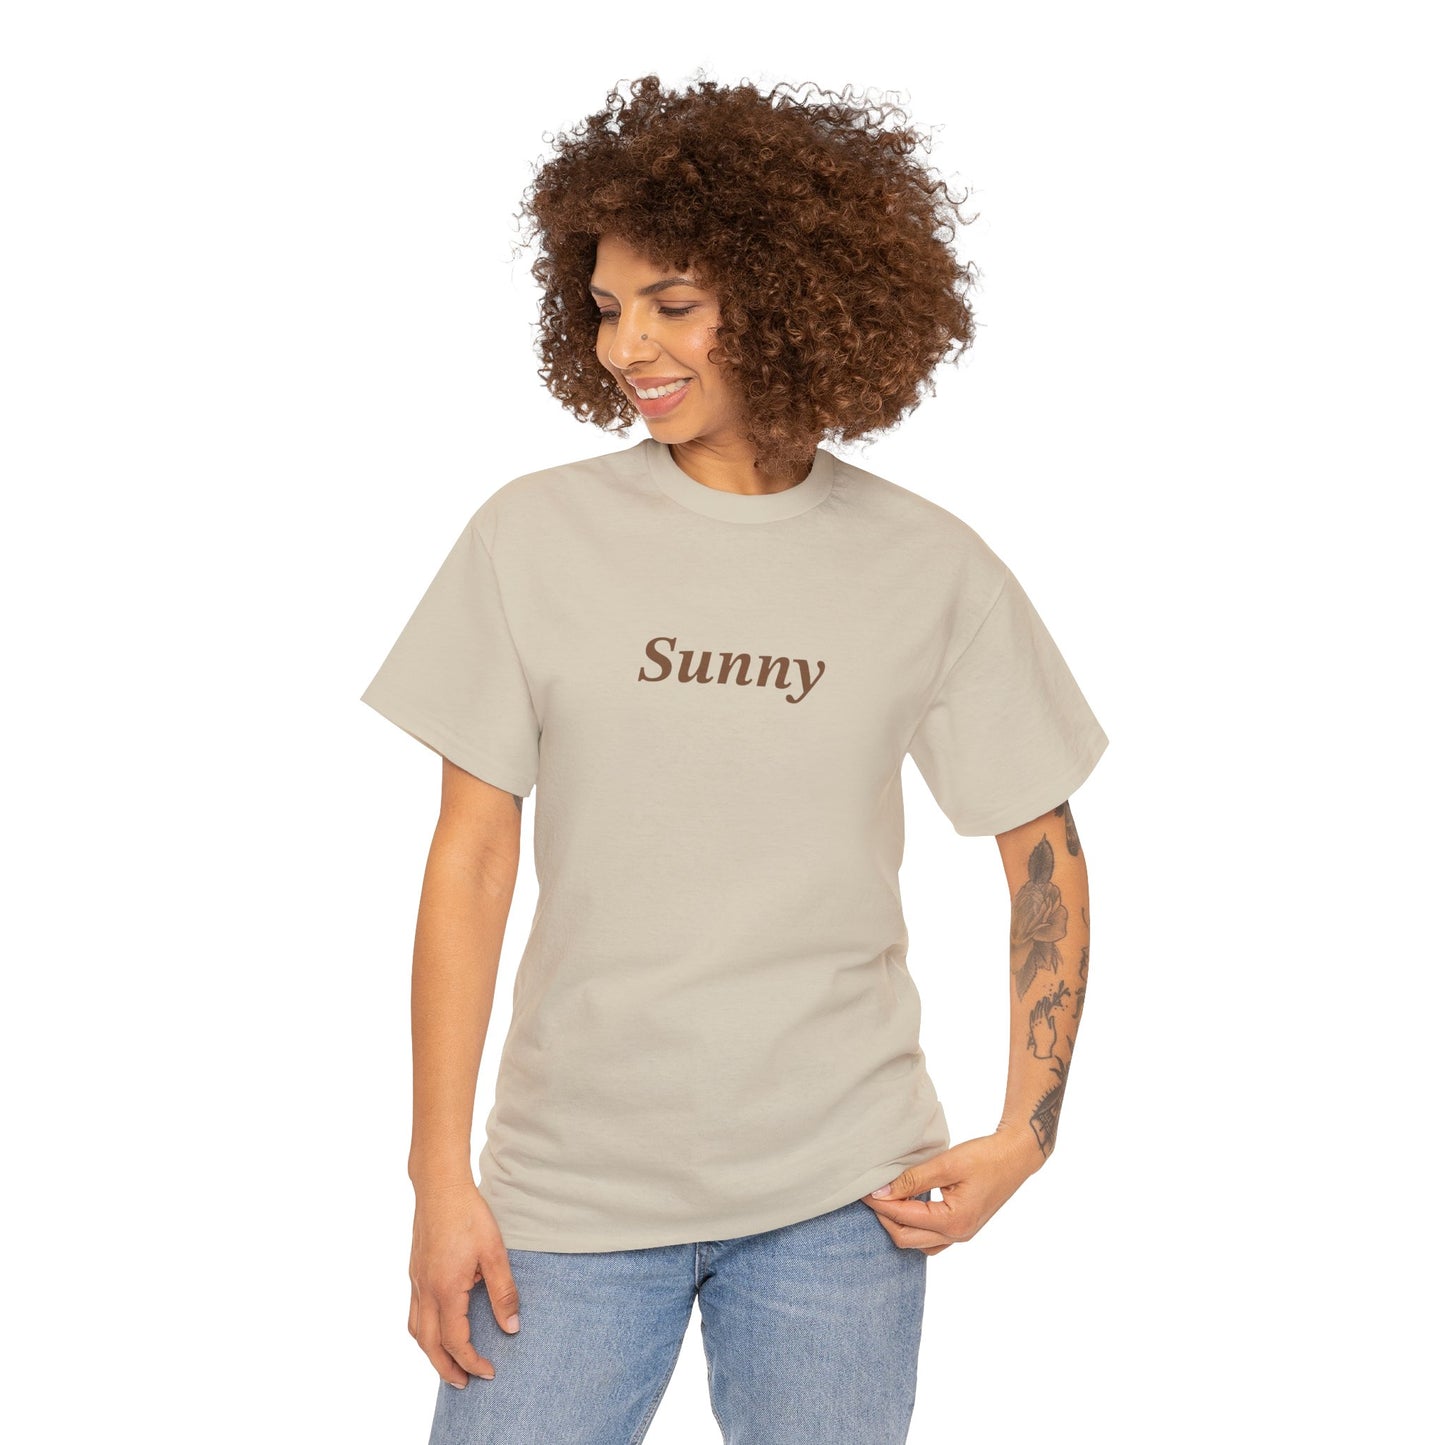 Sunny Unisex Heavy Cotton Tee